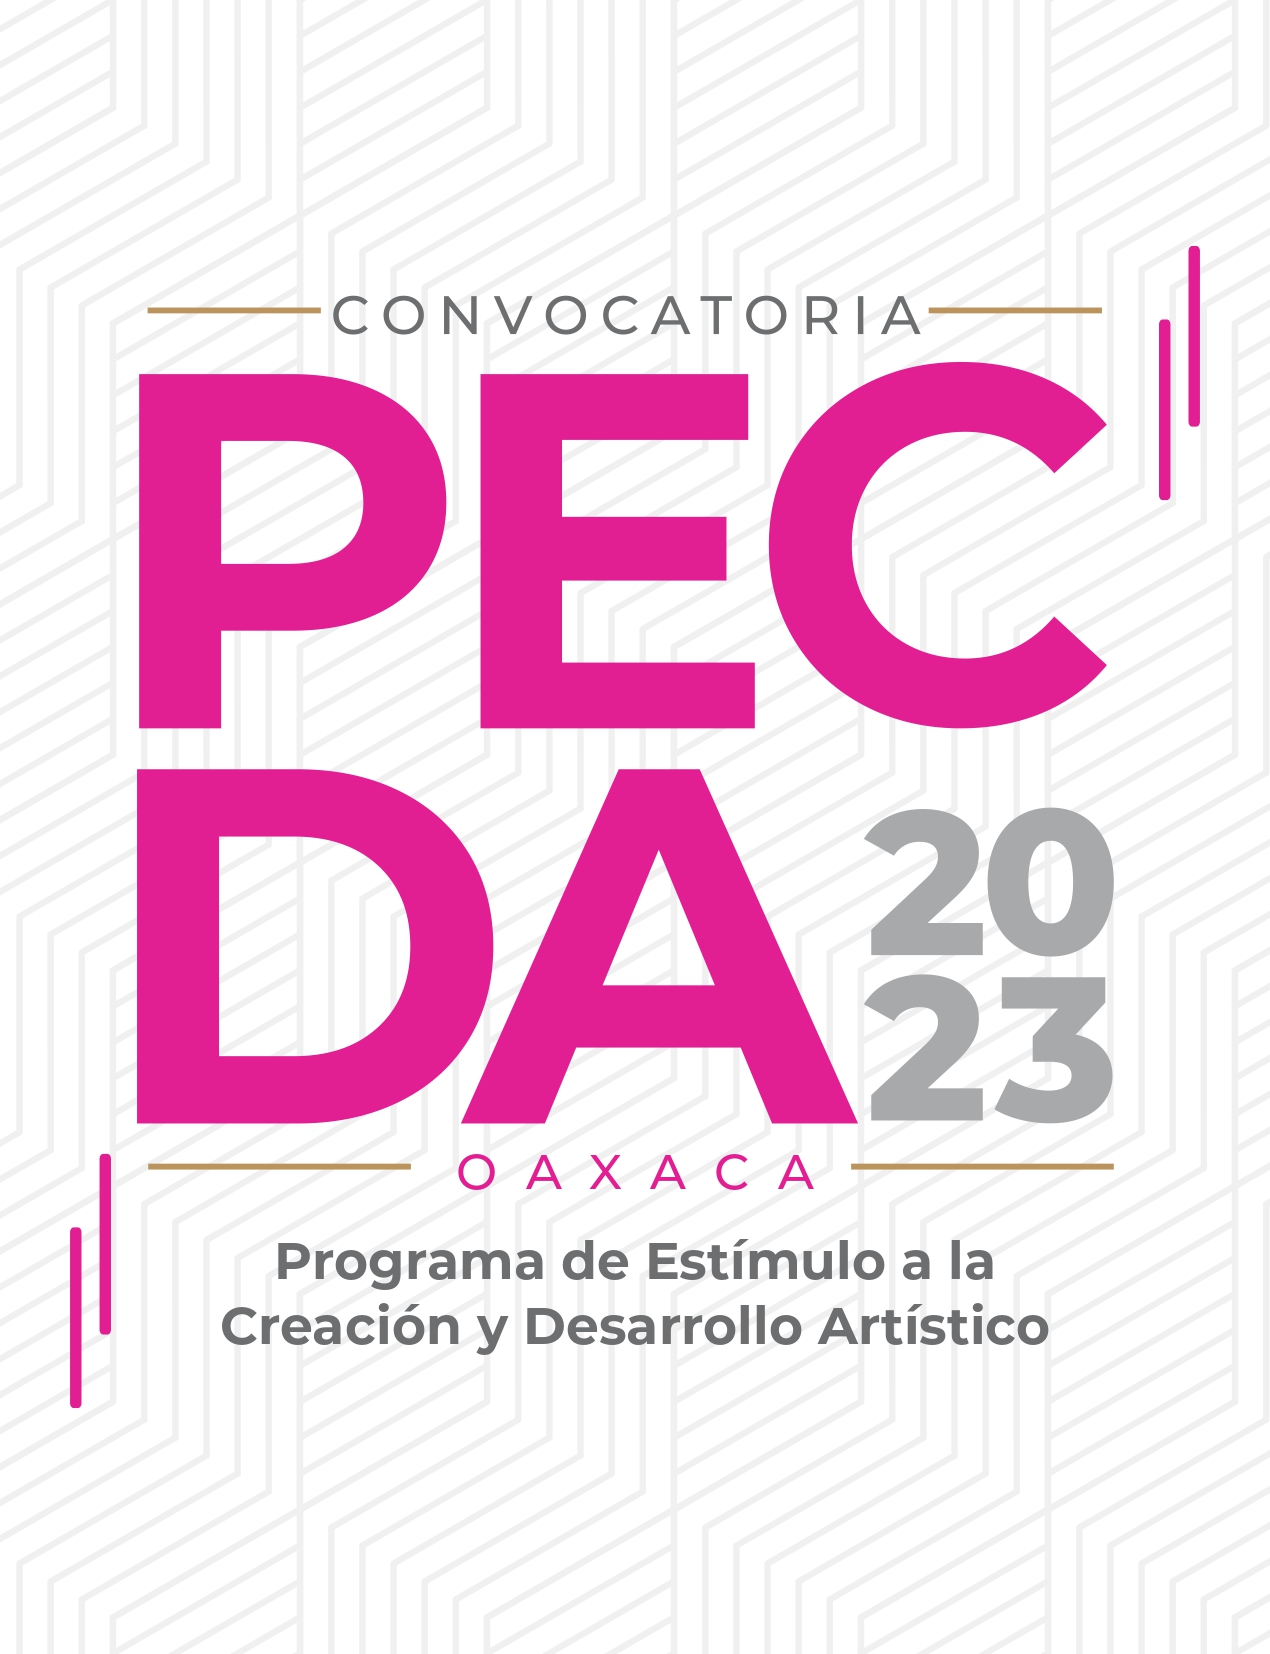 Programa de Estímulo a la Creación y Desarrollo Artístico Oaxaca 2023